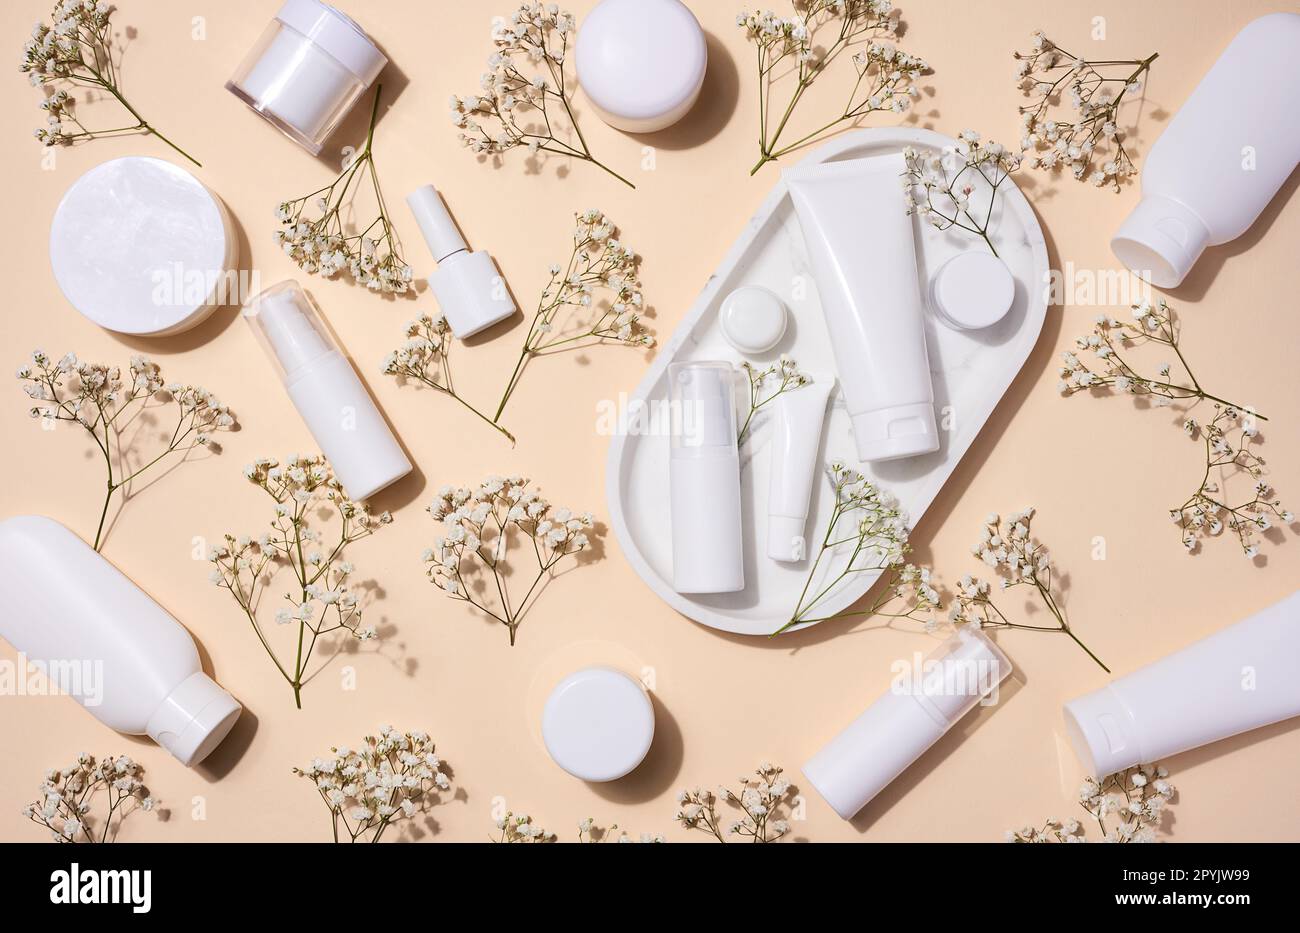 Tubes en plastique blanc, pots et branches de gypsophila sur fond beige, récipients pour crèmes et gels cosmétiques, publicité et promotion de la marque, vue de dessus Banque D'Images